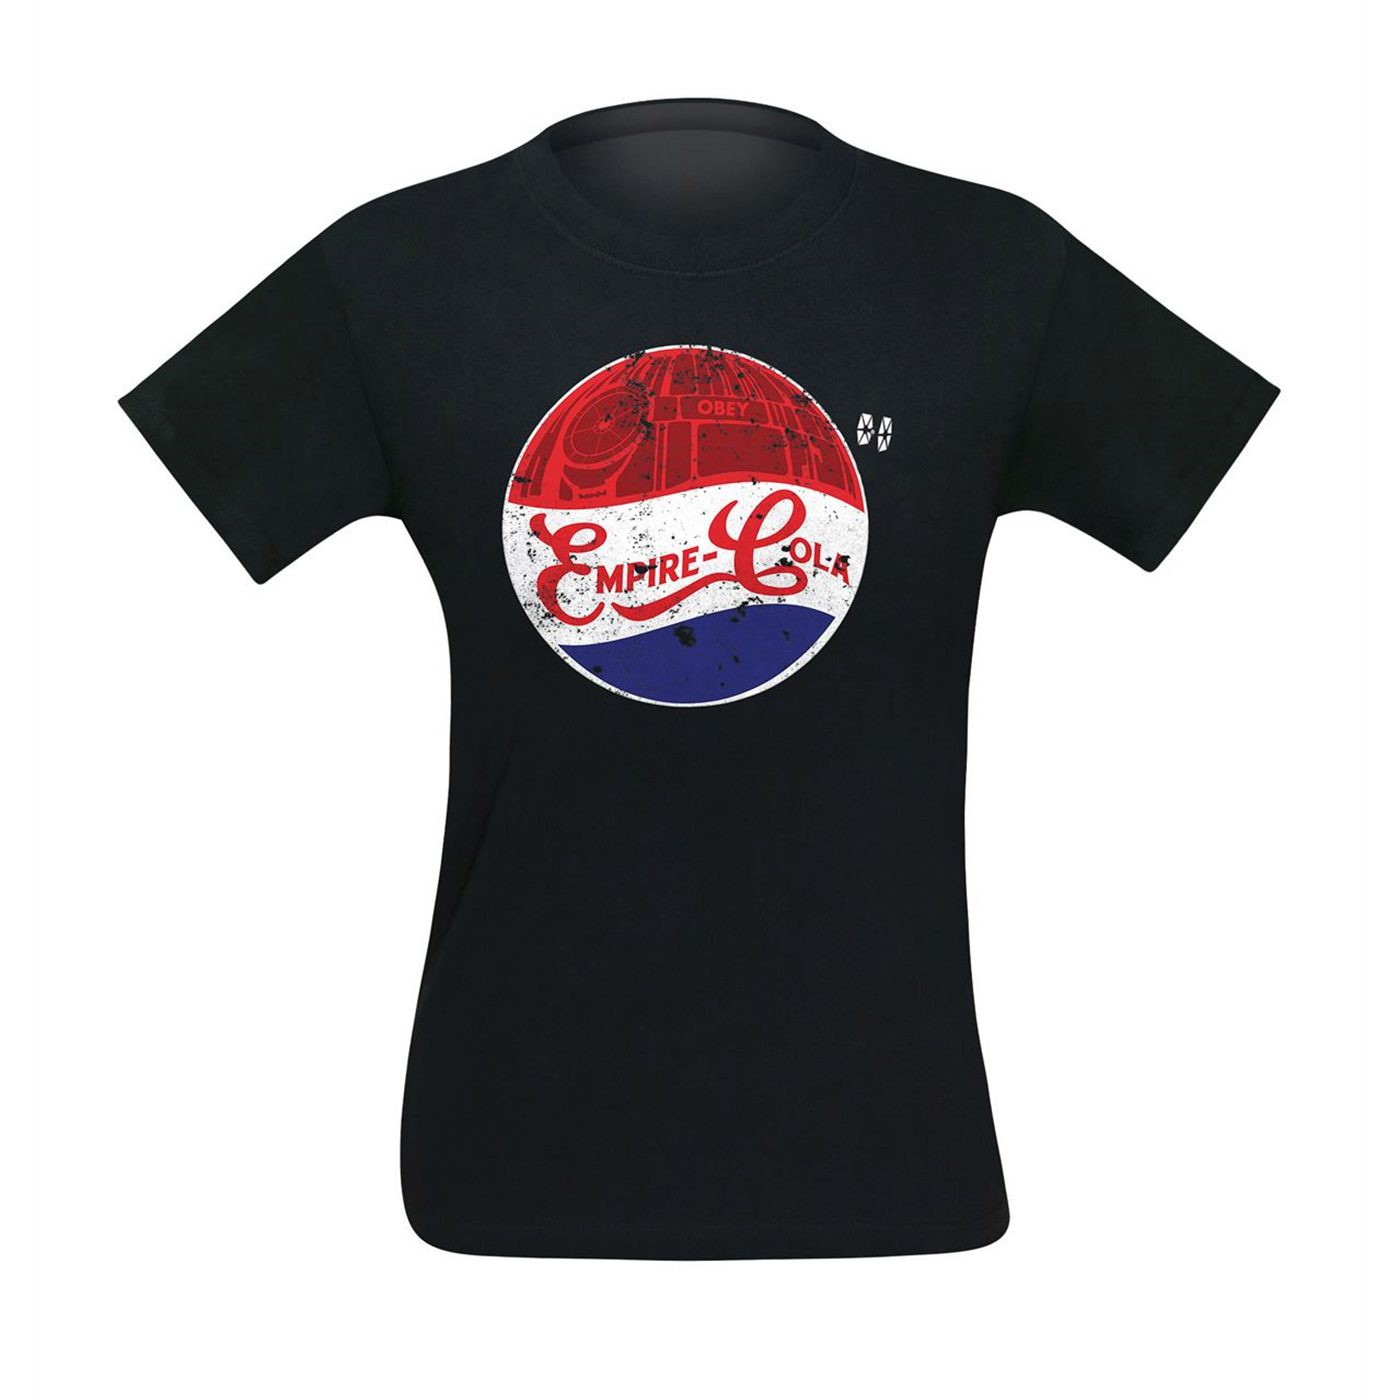 Empire Cola Men's T-Shirt